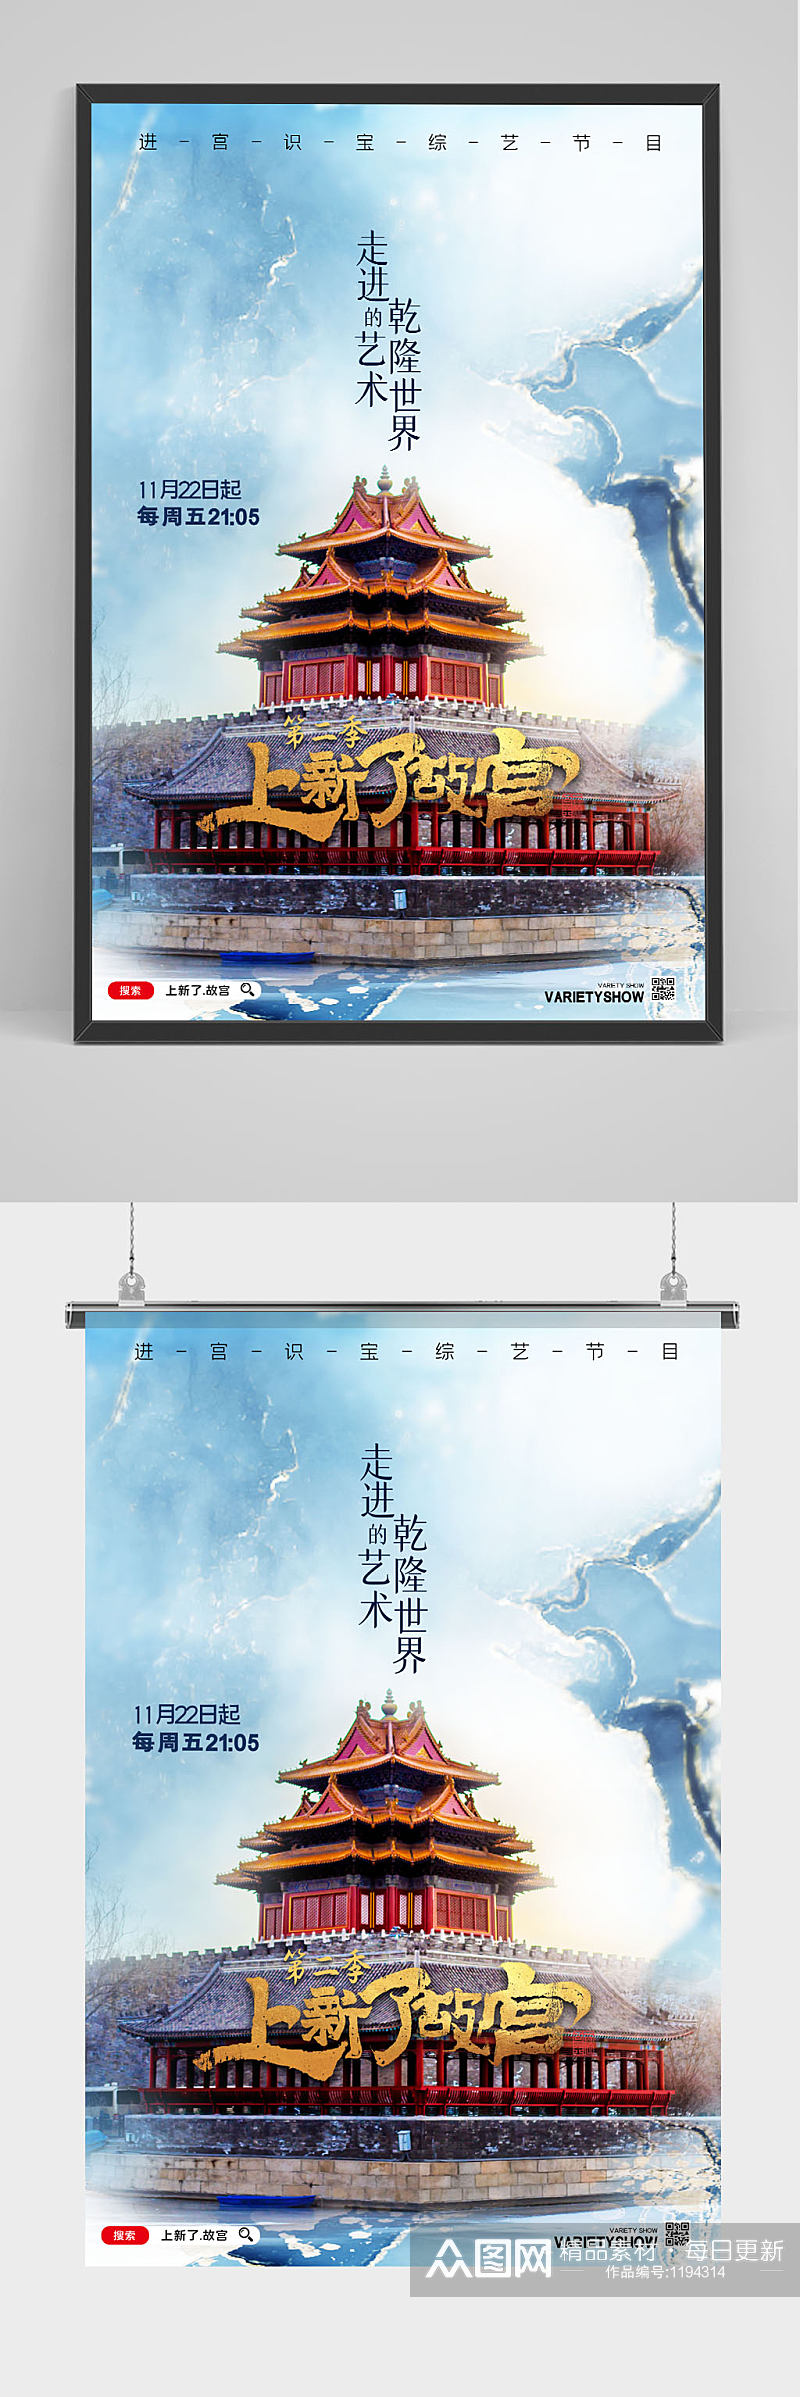 上新了故宫综艺节目宣传海报设计素材